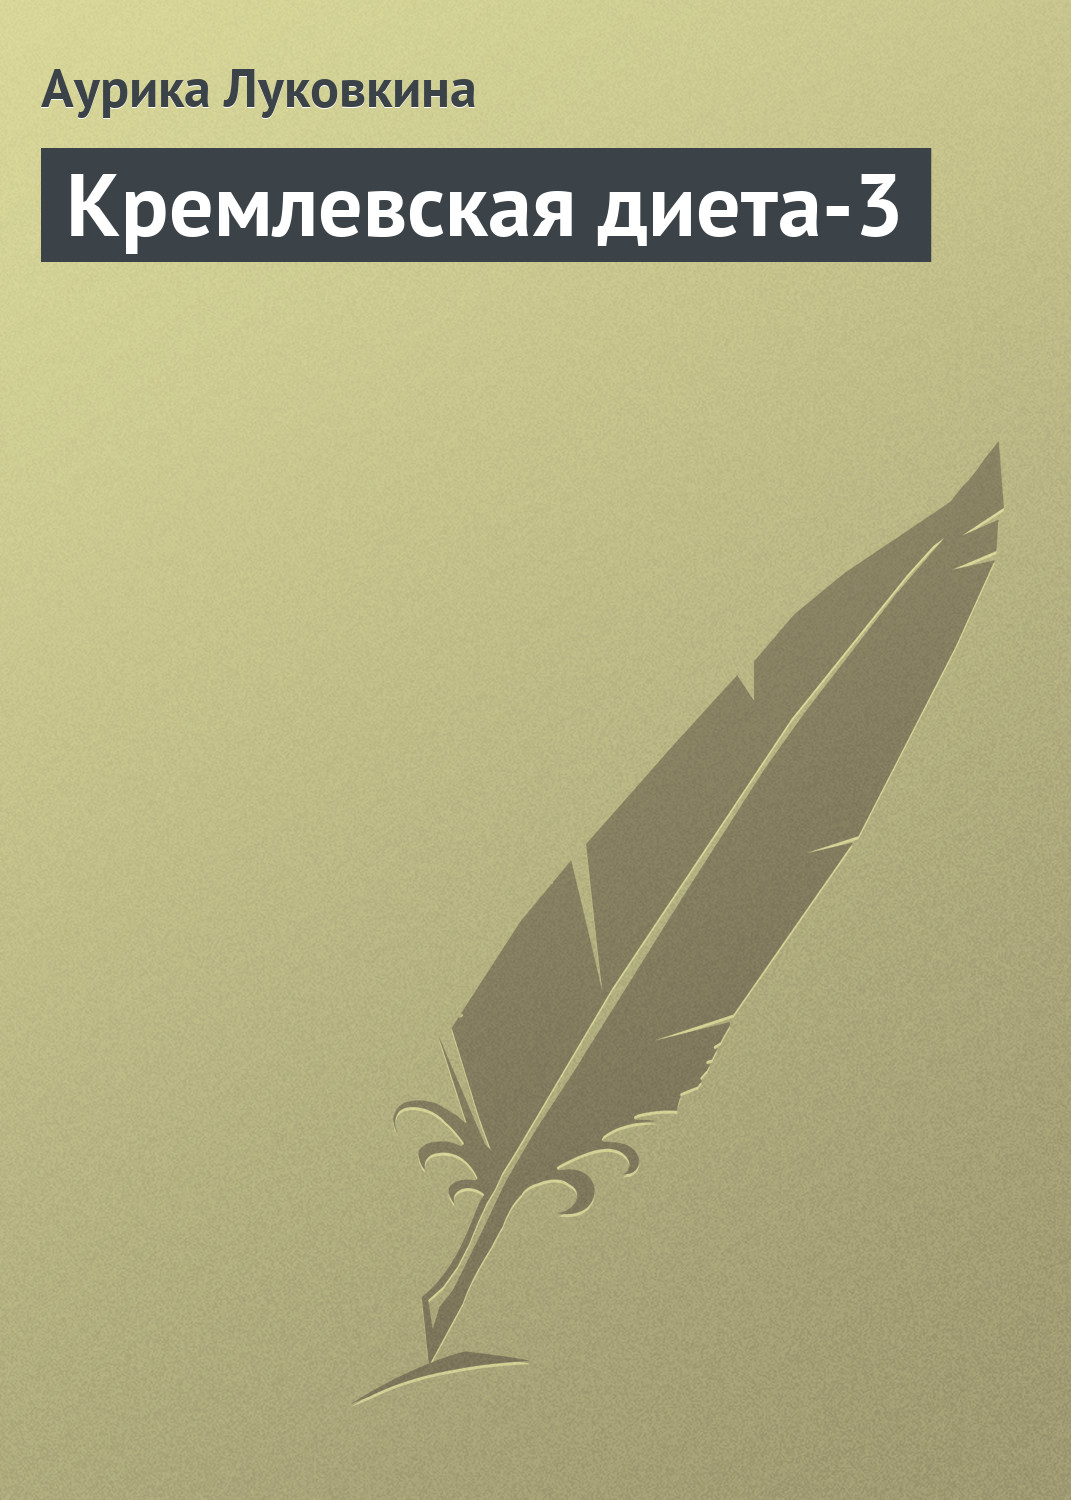 Книга Кремлевская диета-3 из серии , созданная Аурика Луковкина, может относится к жанру Кулинария, Здоровье. Стоимость электронной книги Кремлевская диета-3 с идентификатором 8919247 составляет 19.99 руб.